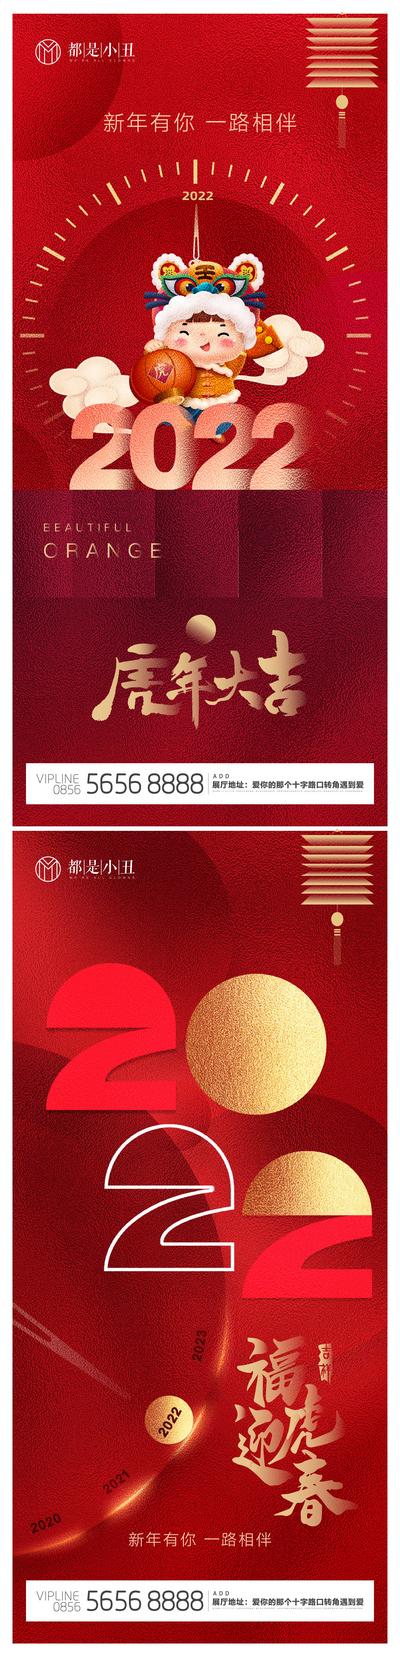 南门网 海报 地产 公历节日 元旦 2022 虎年 新年 红金